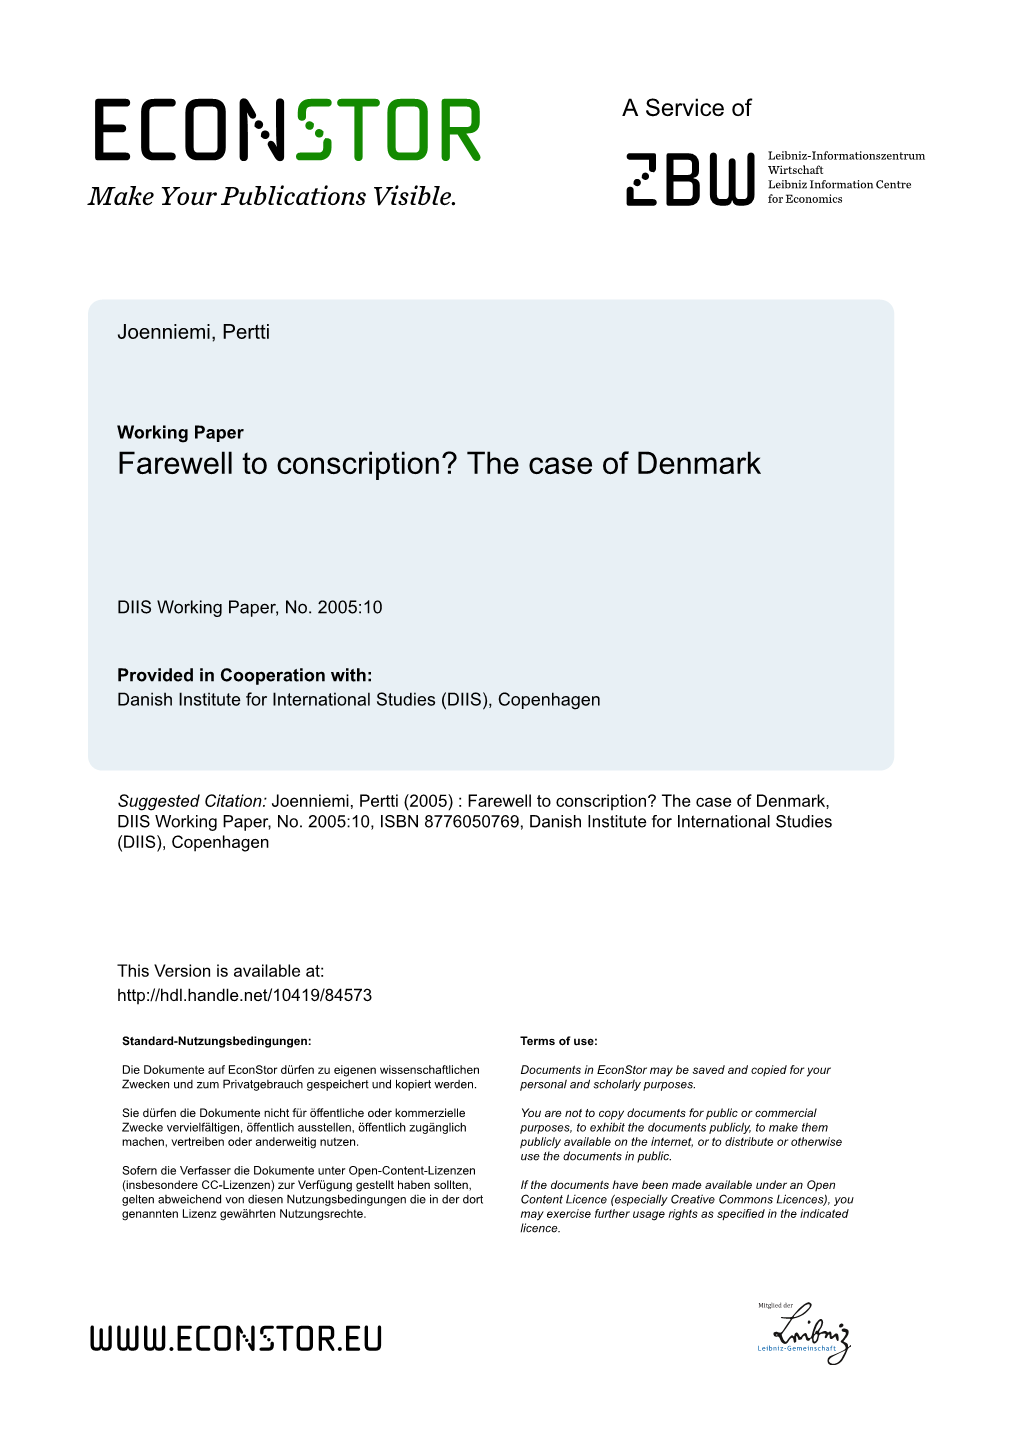 Farewell to Conscription? the Case of Denmark